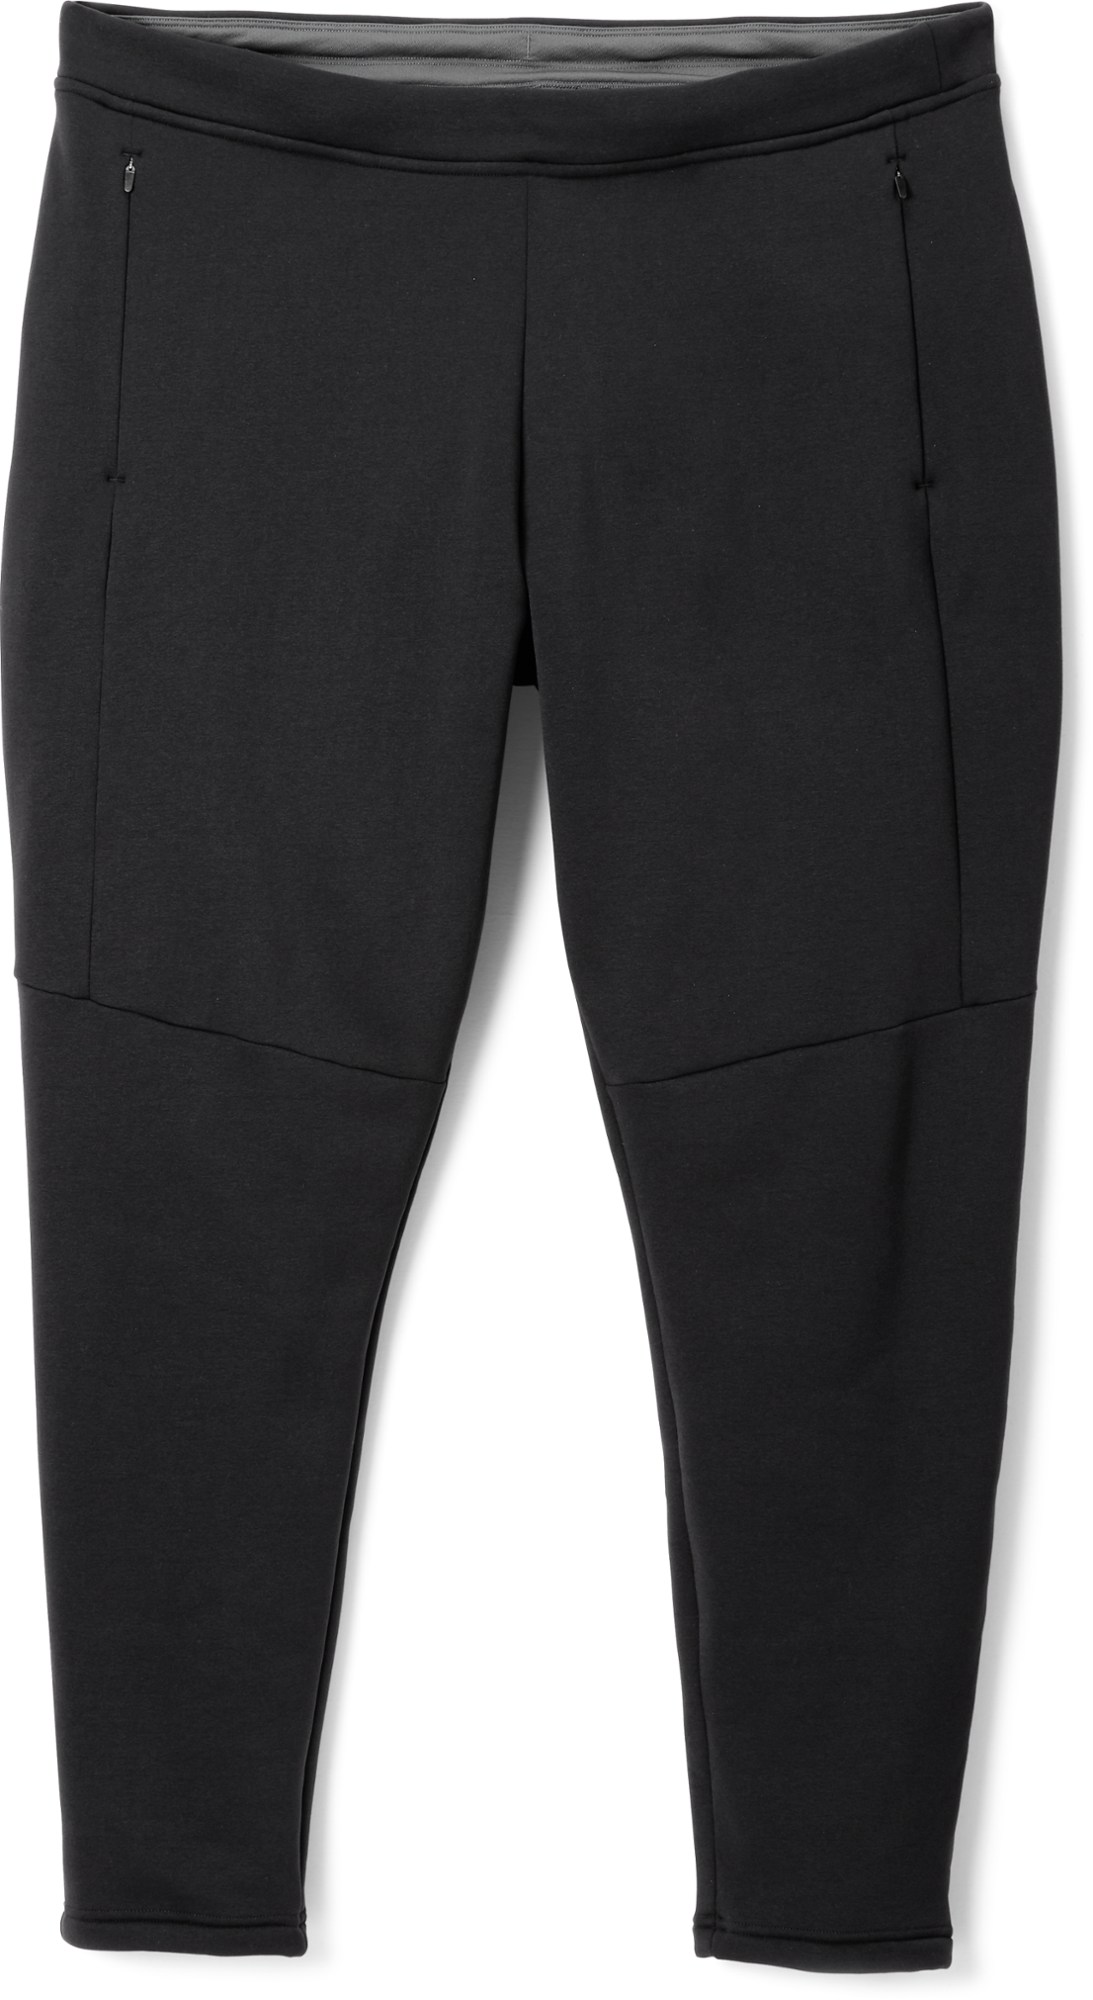 Флисовые брюки Hyperaxis — женские размеры больших размеров REI Co-op, черный